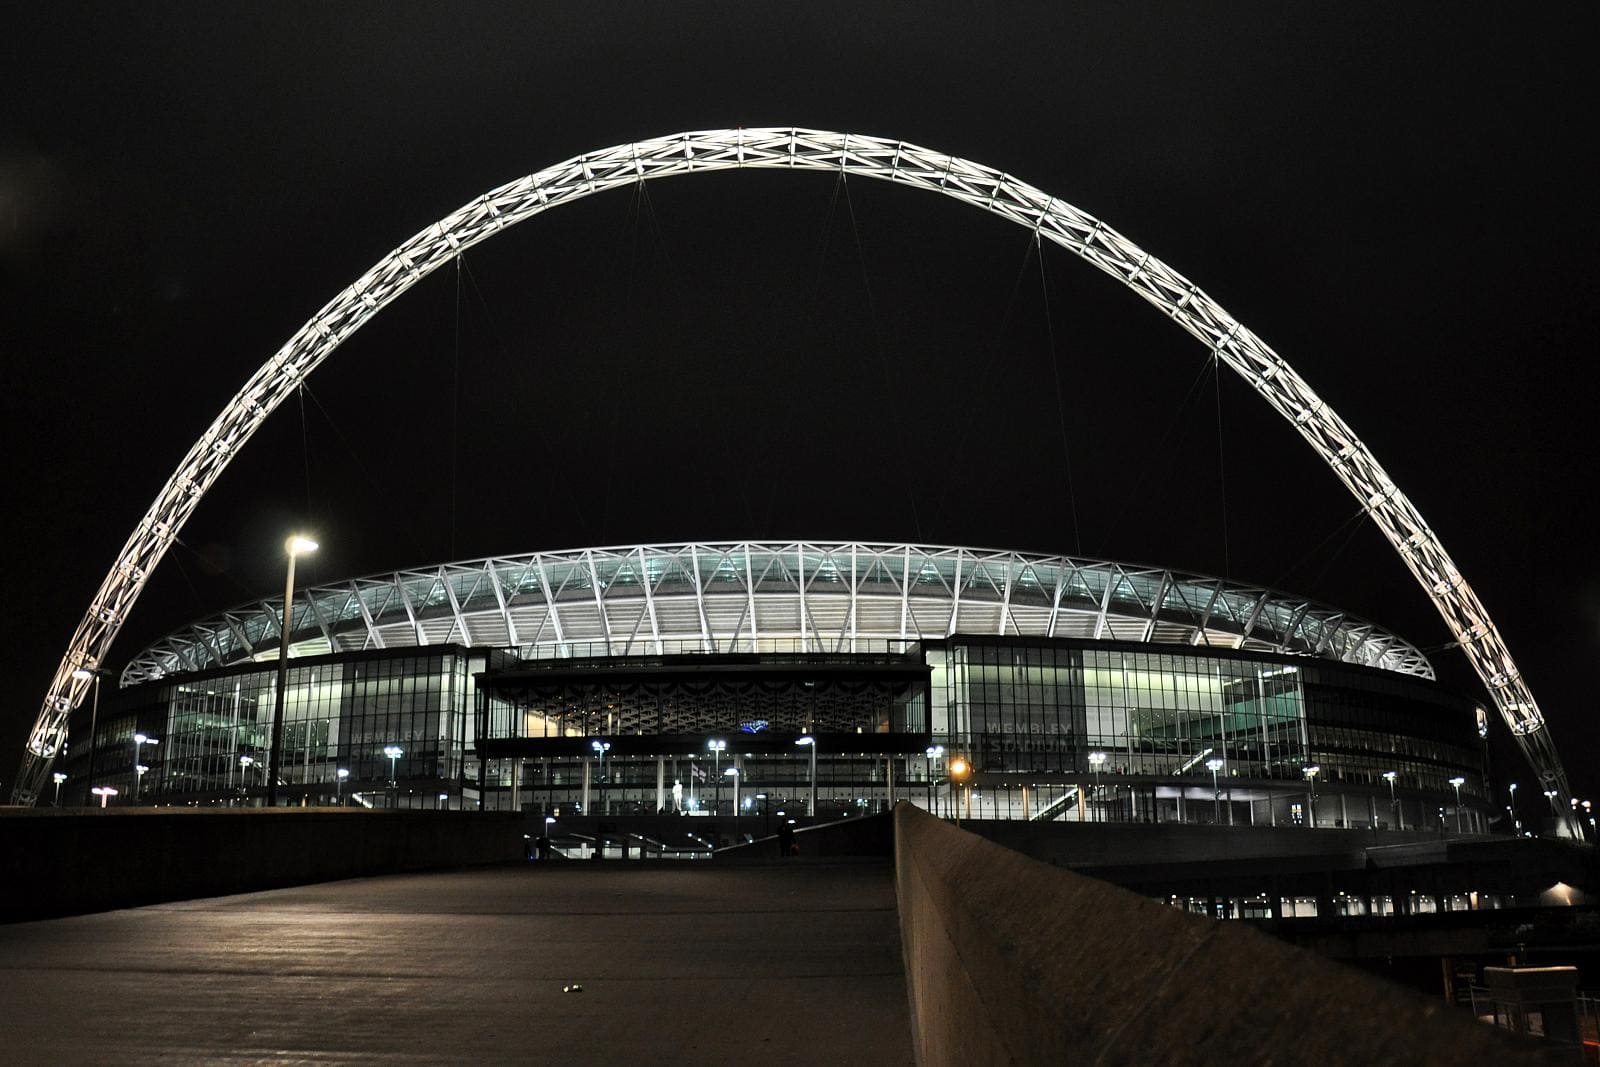 Wembley la storia il mito